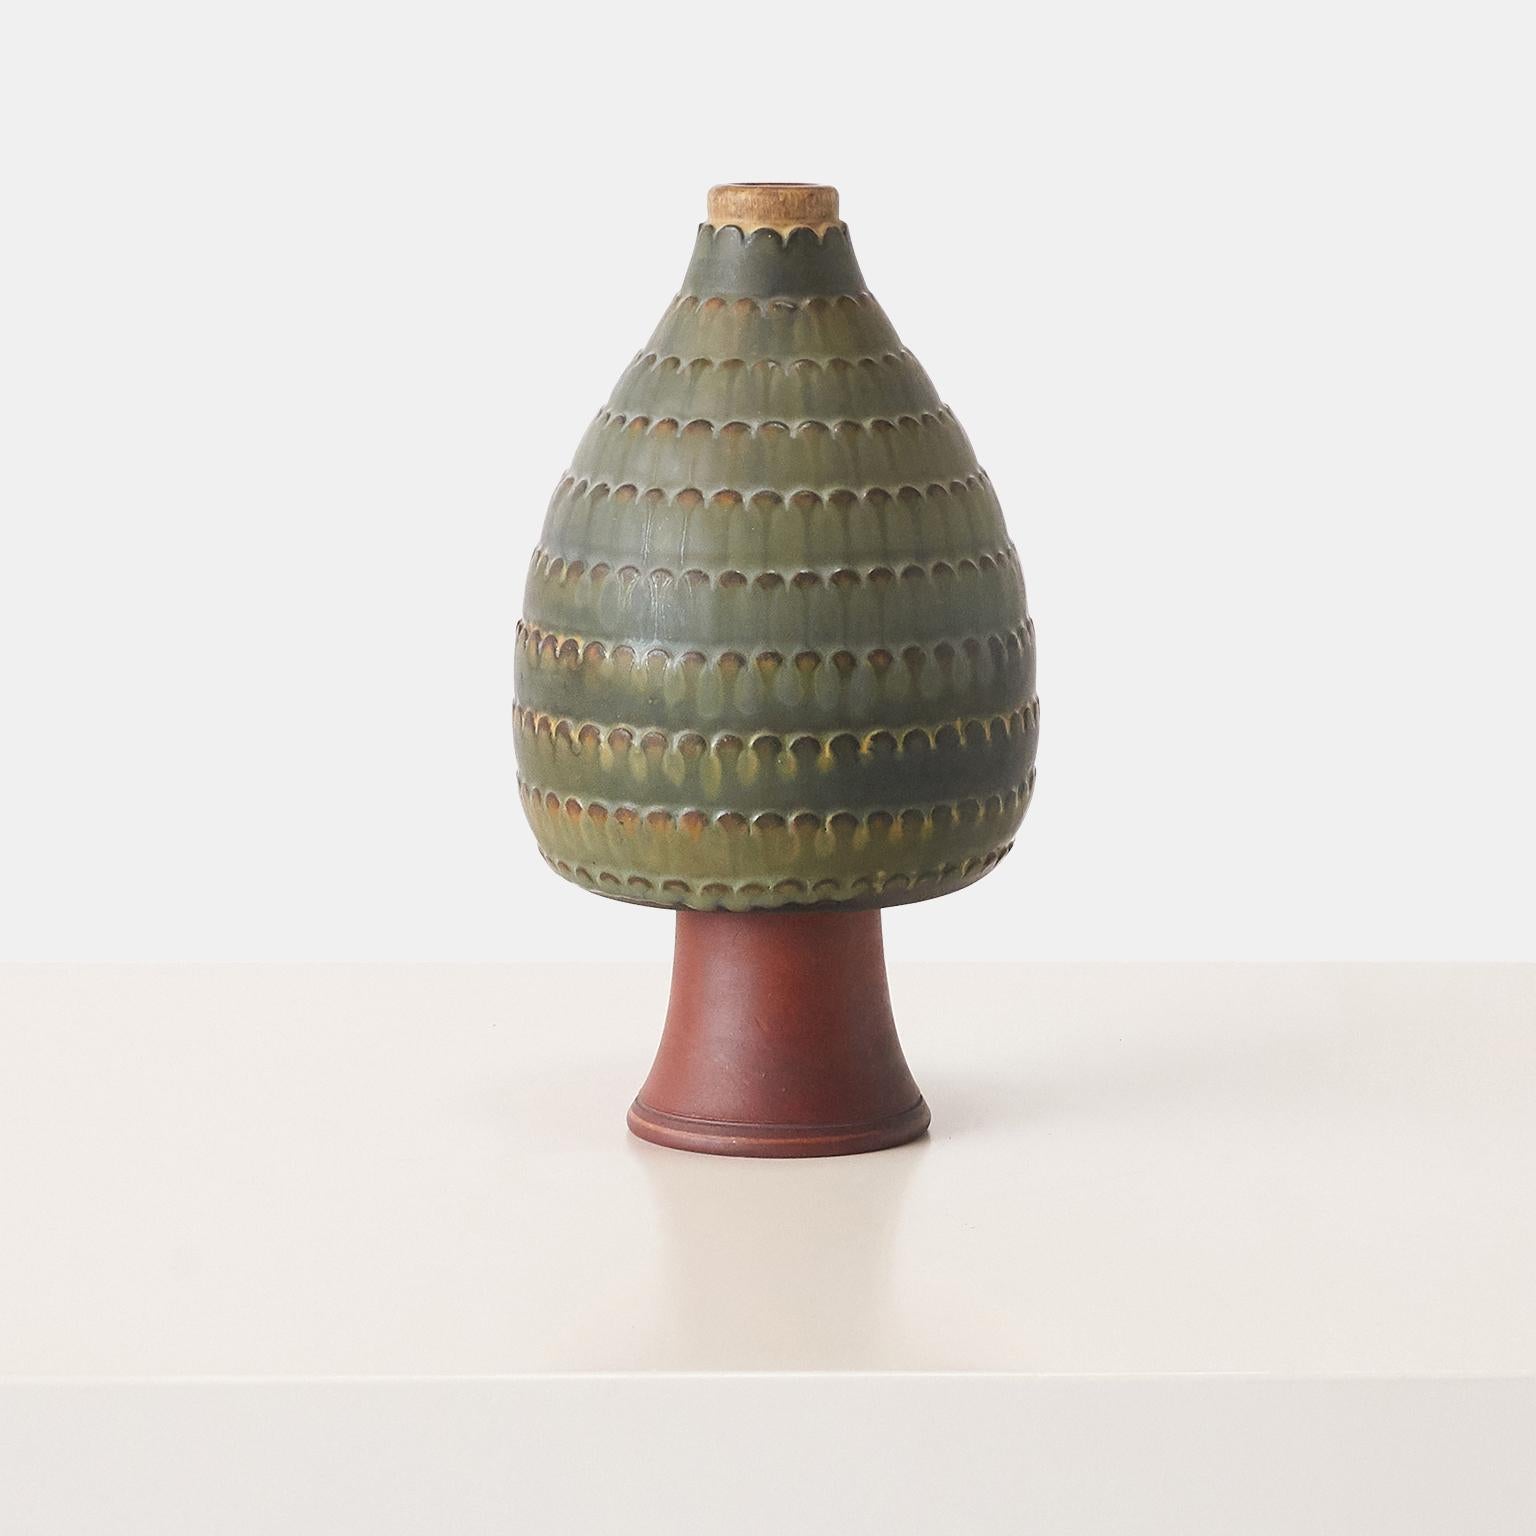 Un vase en grès émaillé, signature incisée et marque de studio sur le dessous : [Farsta Kage Studio].